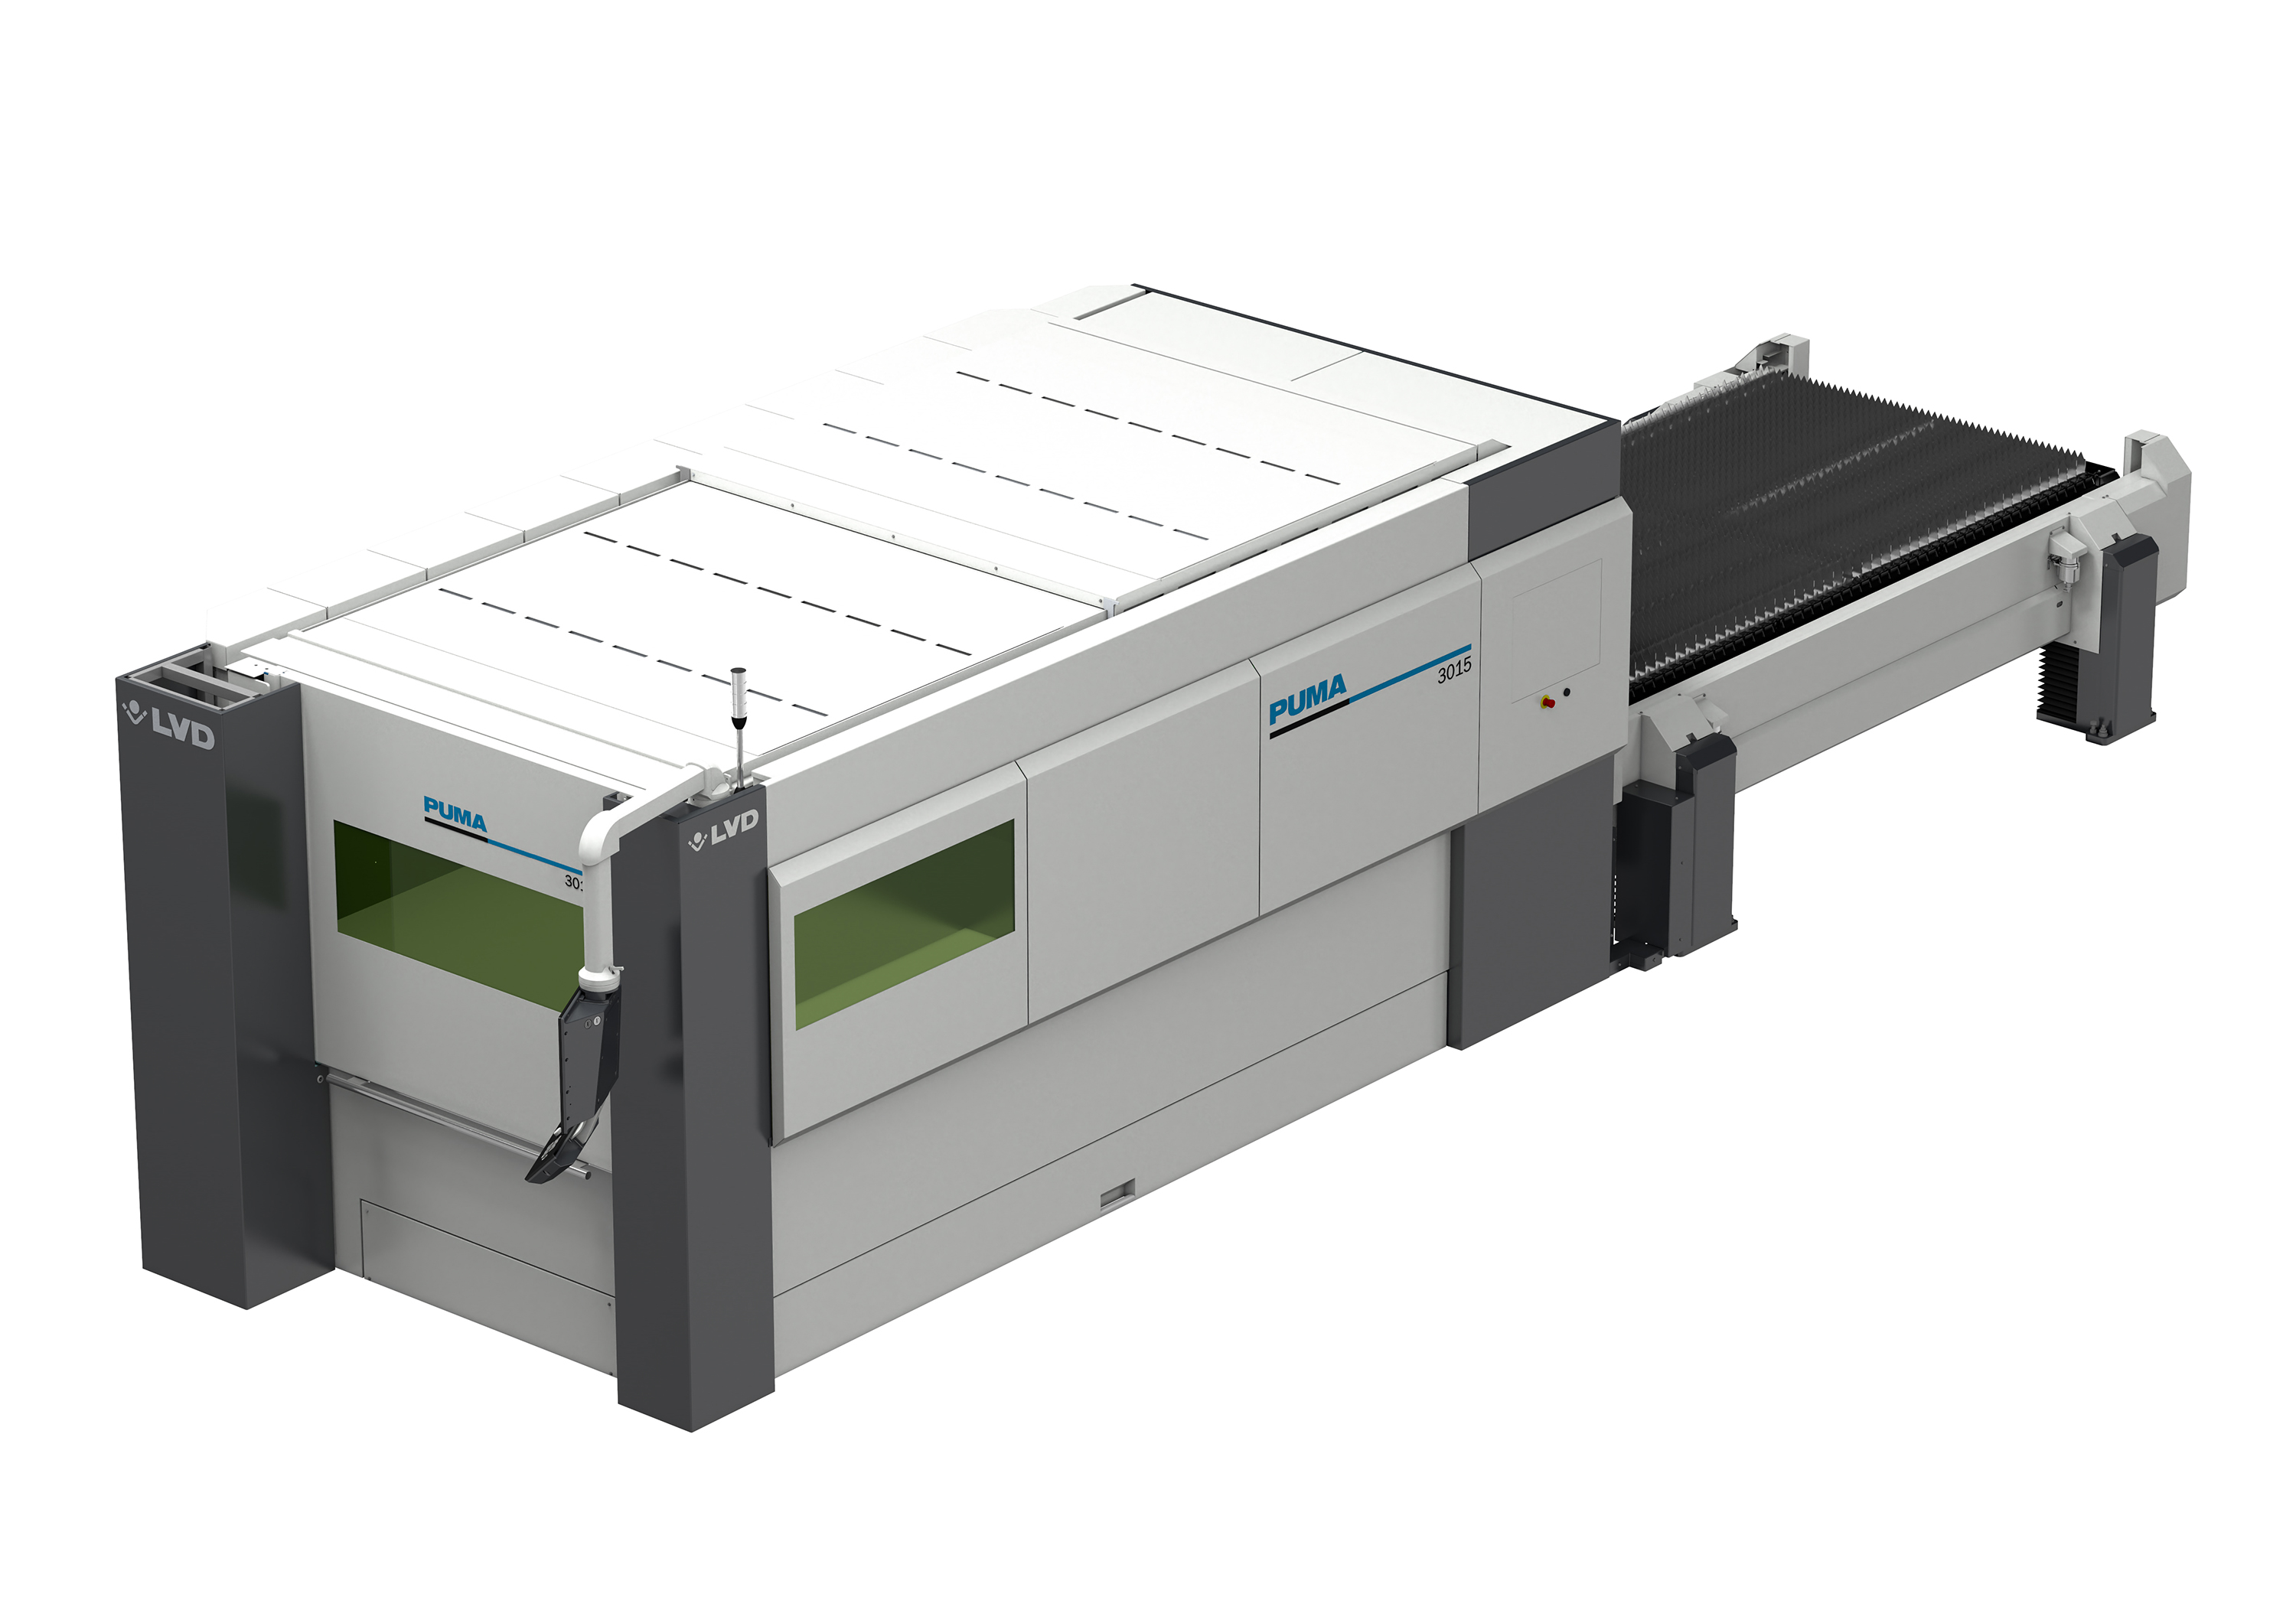 New cost-efficient laser cutting machine